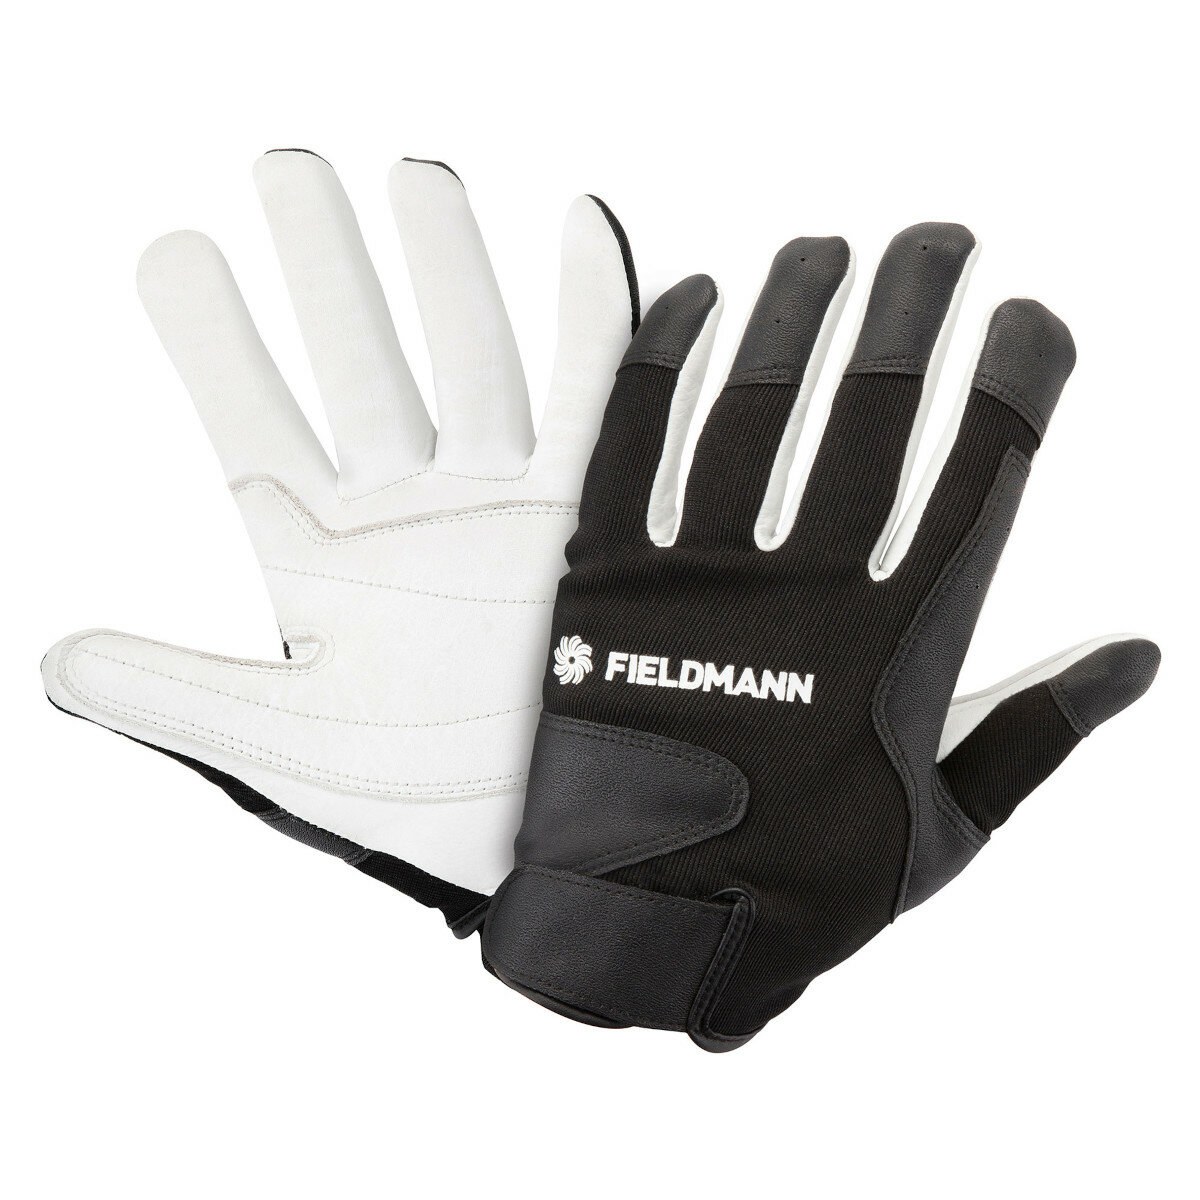 Rękawice ogrodowe Fieldmann FZO 7010 widok na przód i spód rękawicy